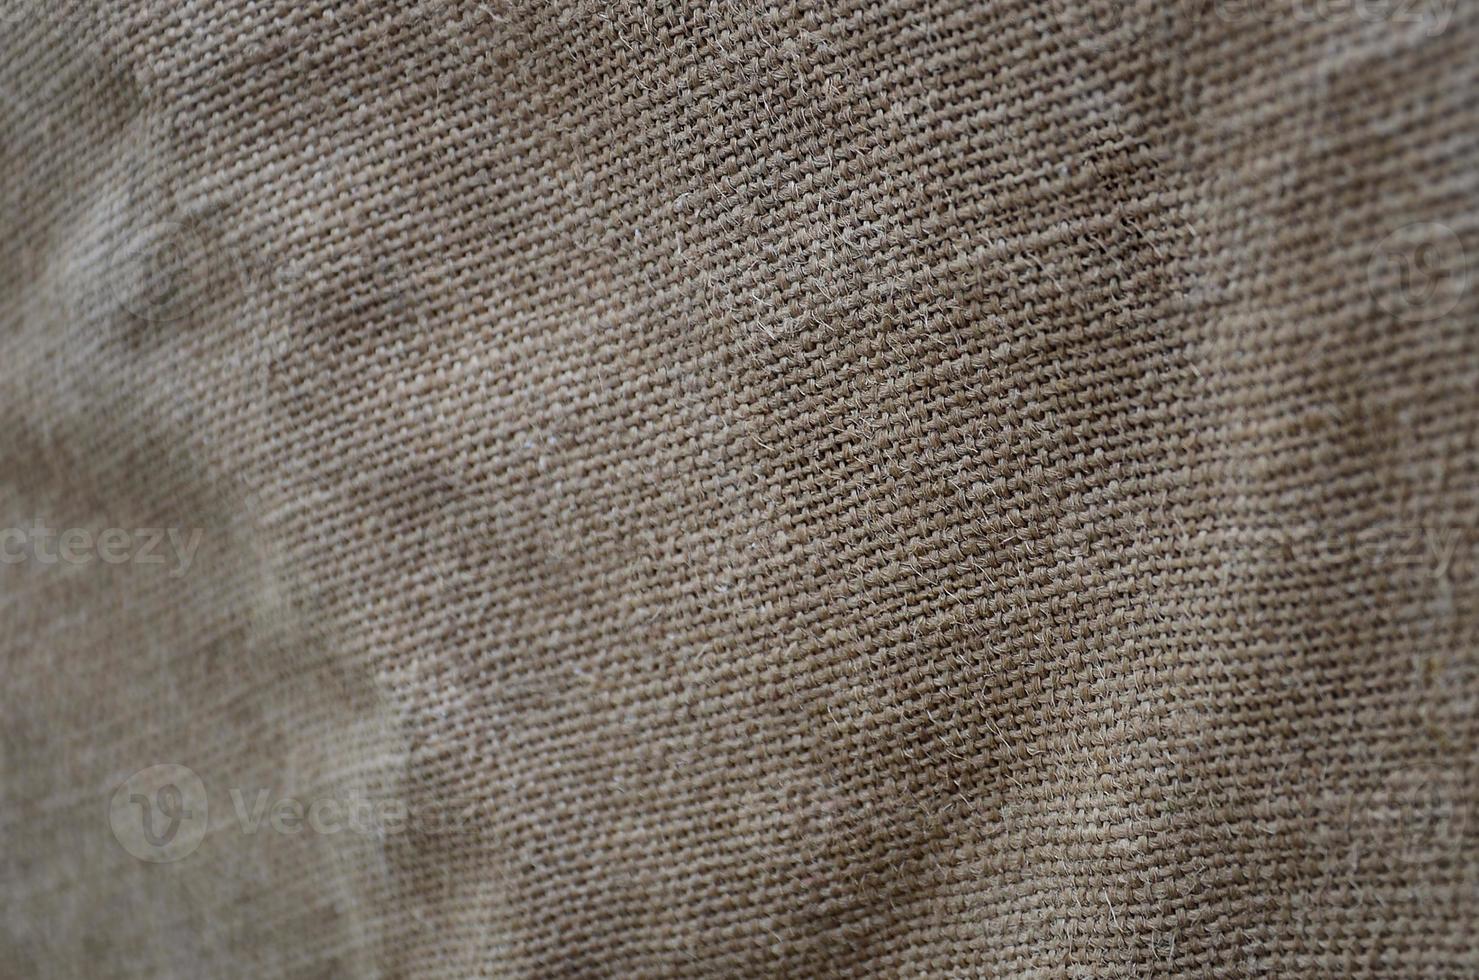 a textura de um pano de saco marrom muito velho. textura retrô com material de lona. imagem de fundo com espaço de cópia foto